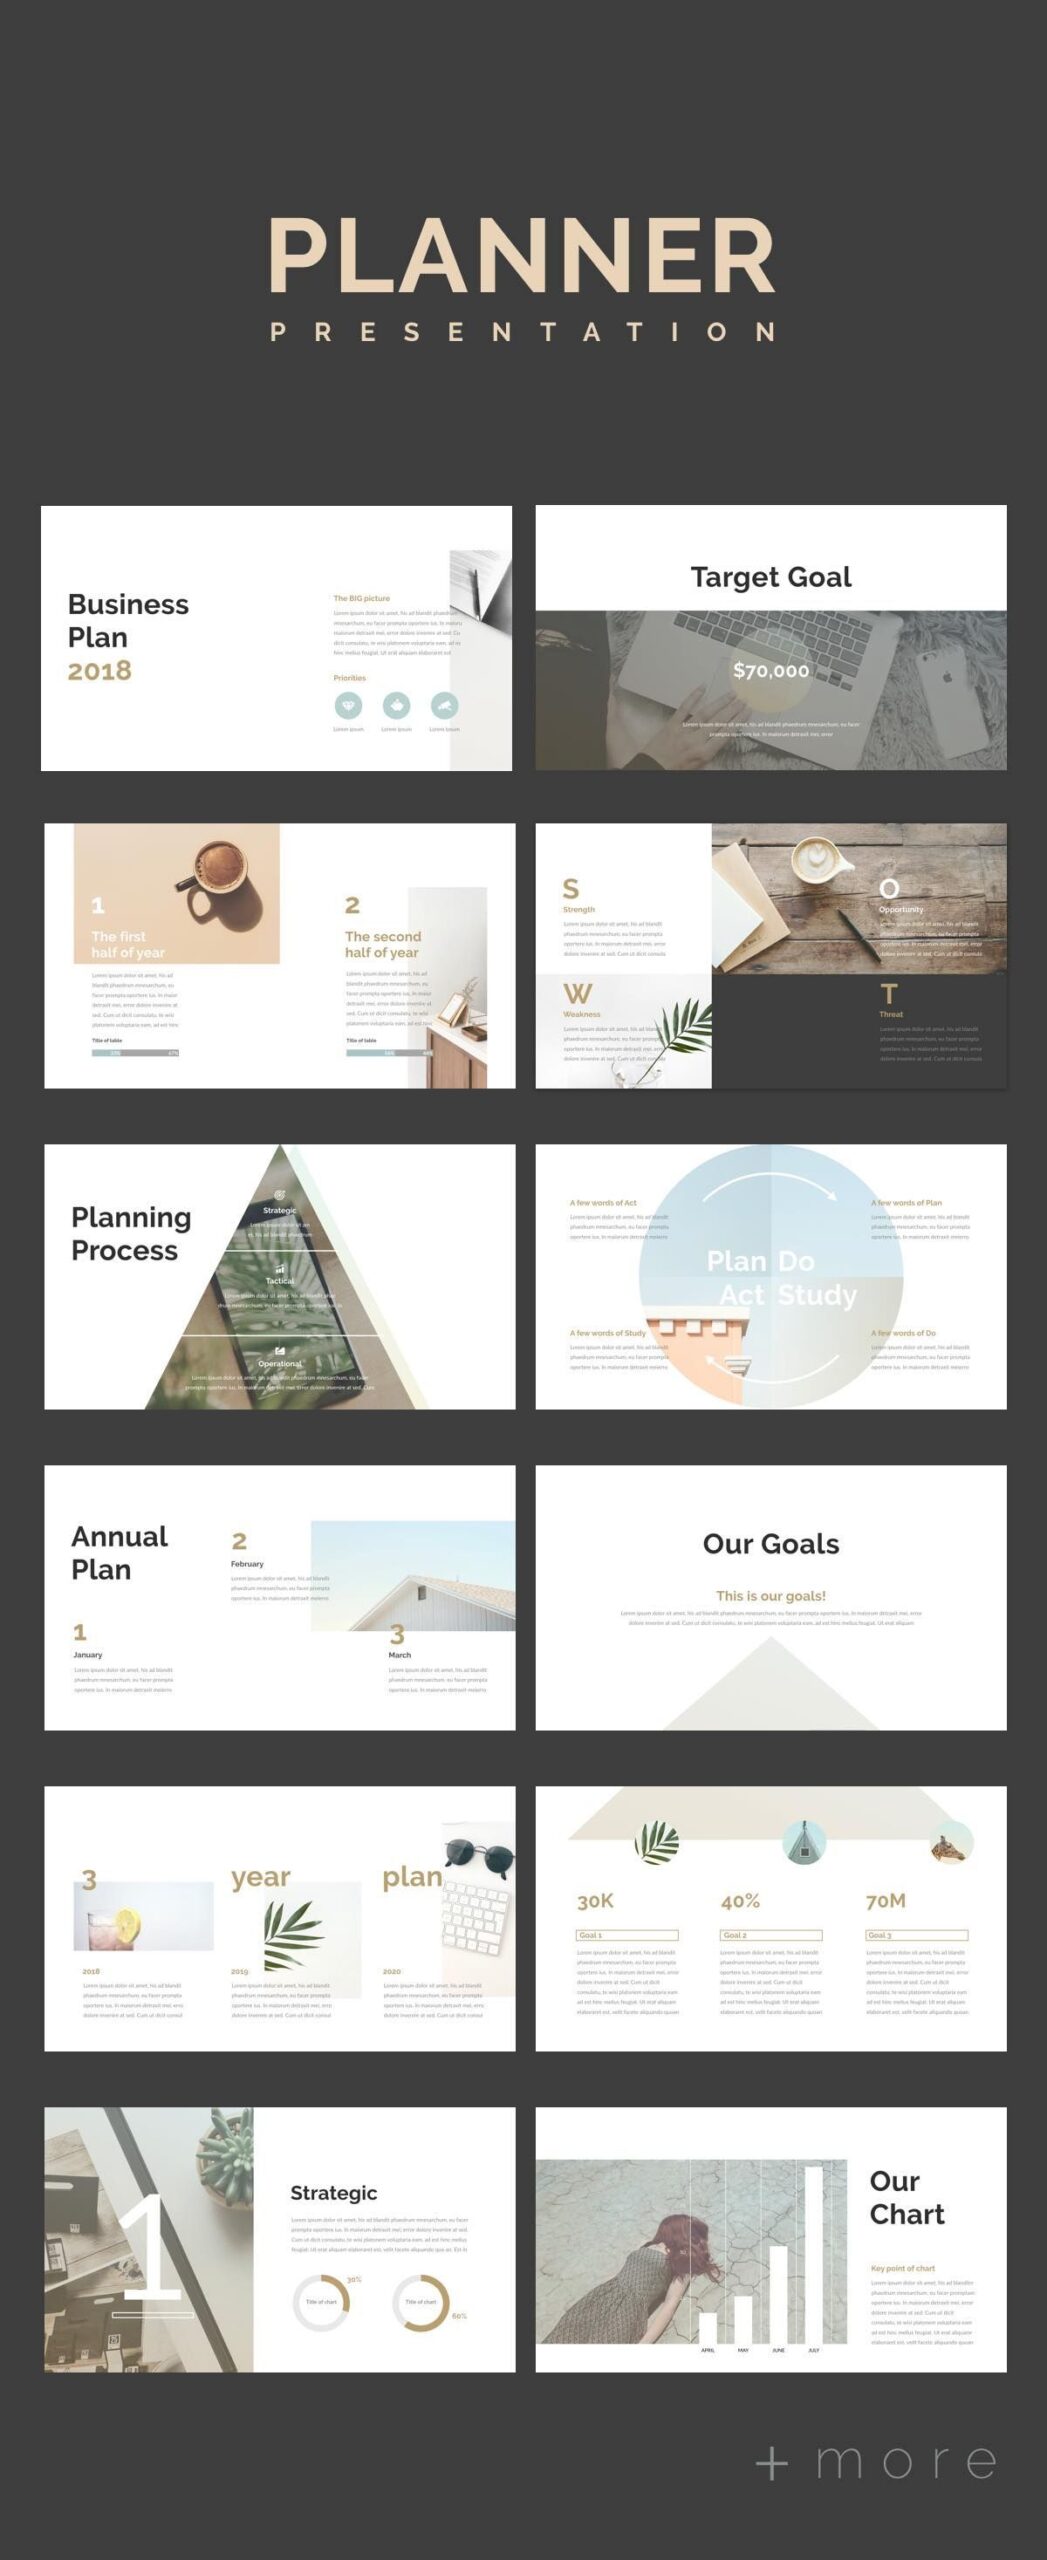 Kumpulan Template PowerPoint Pinterest Terkini Untuk Membuat Presentasi dengan Menarik